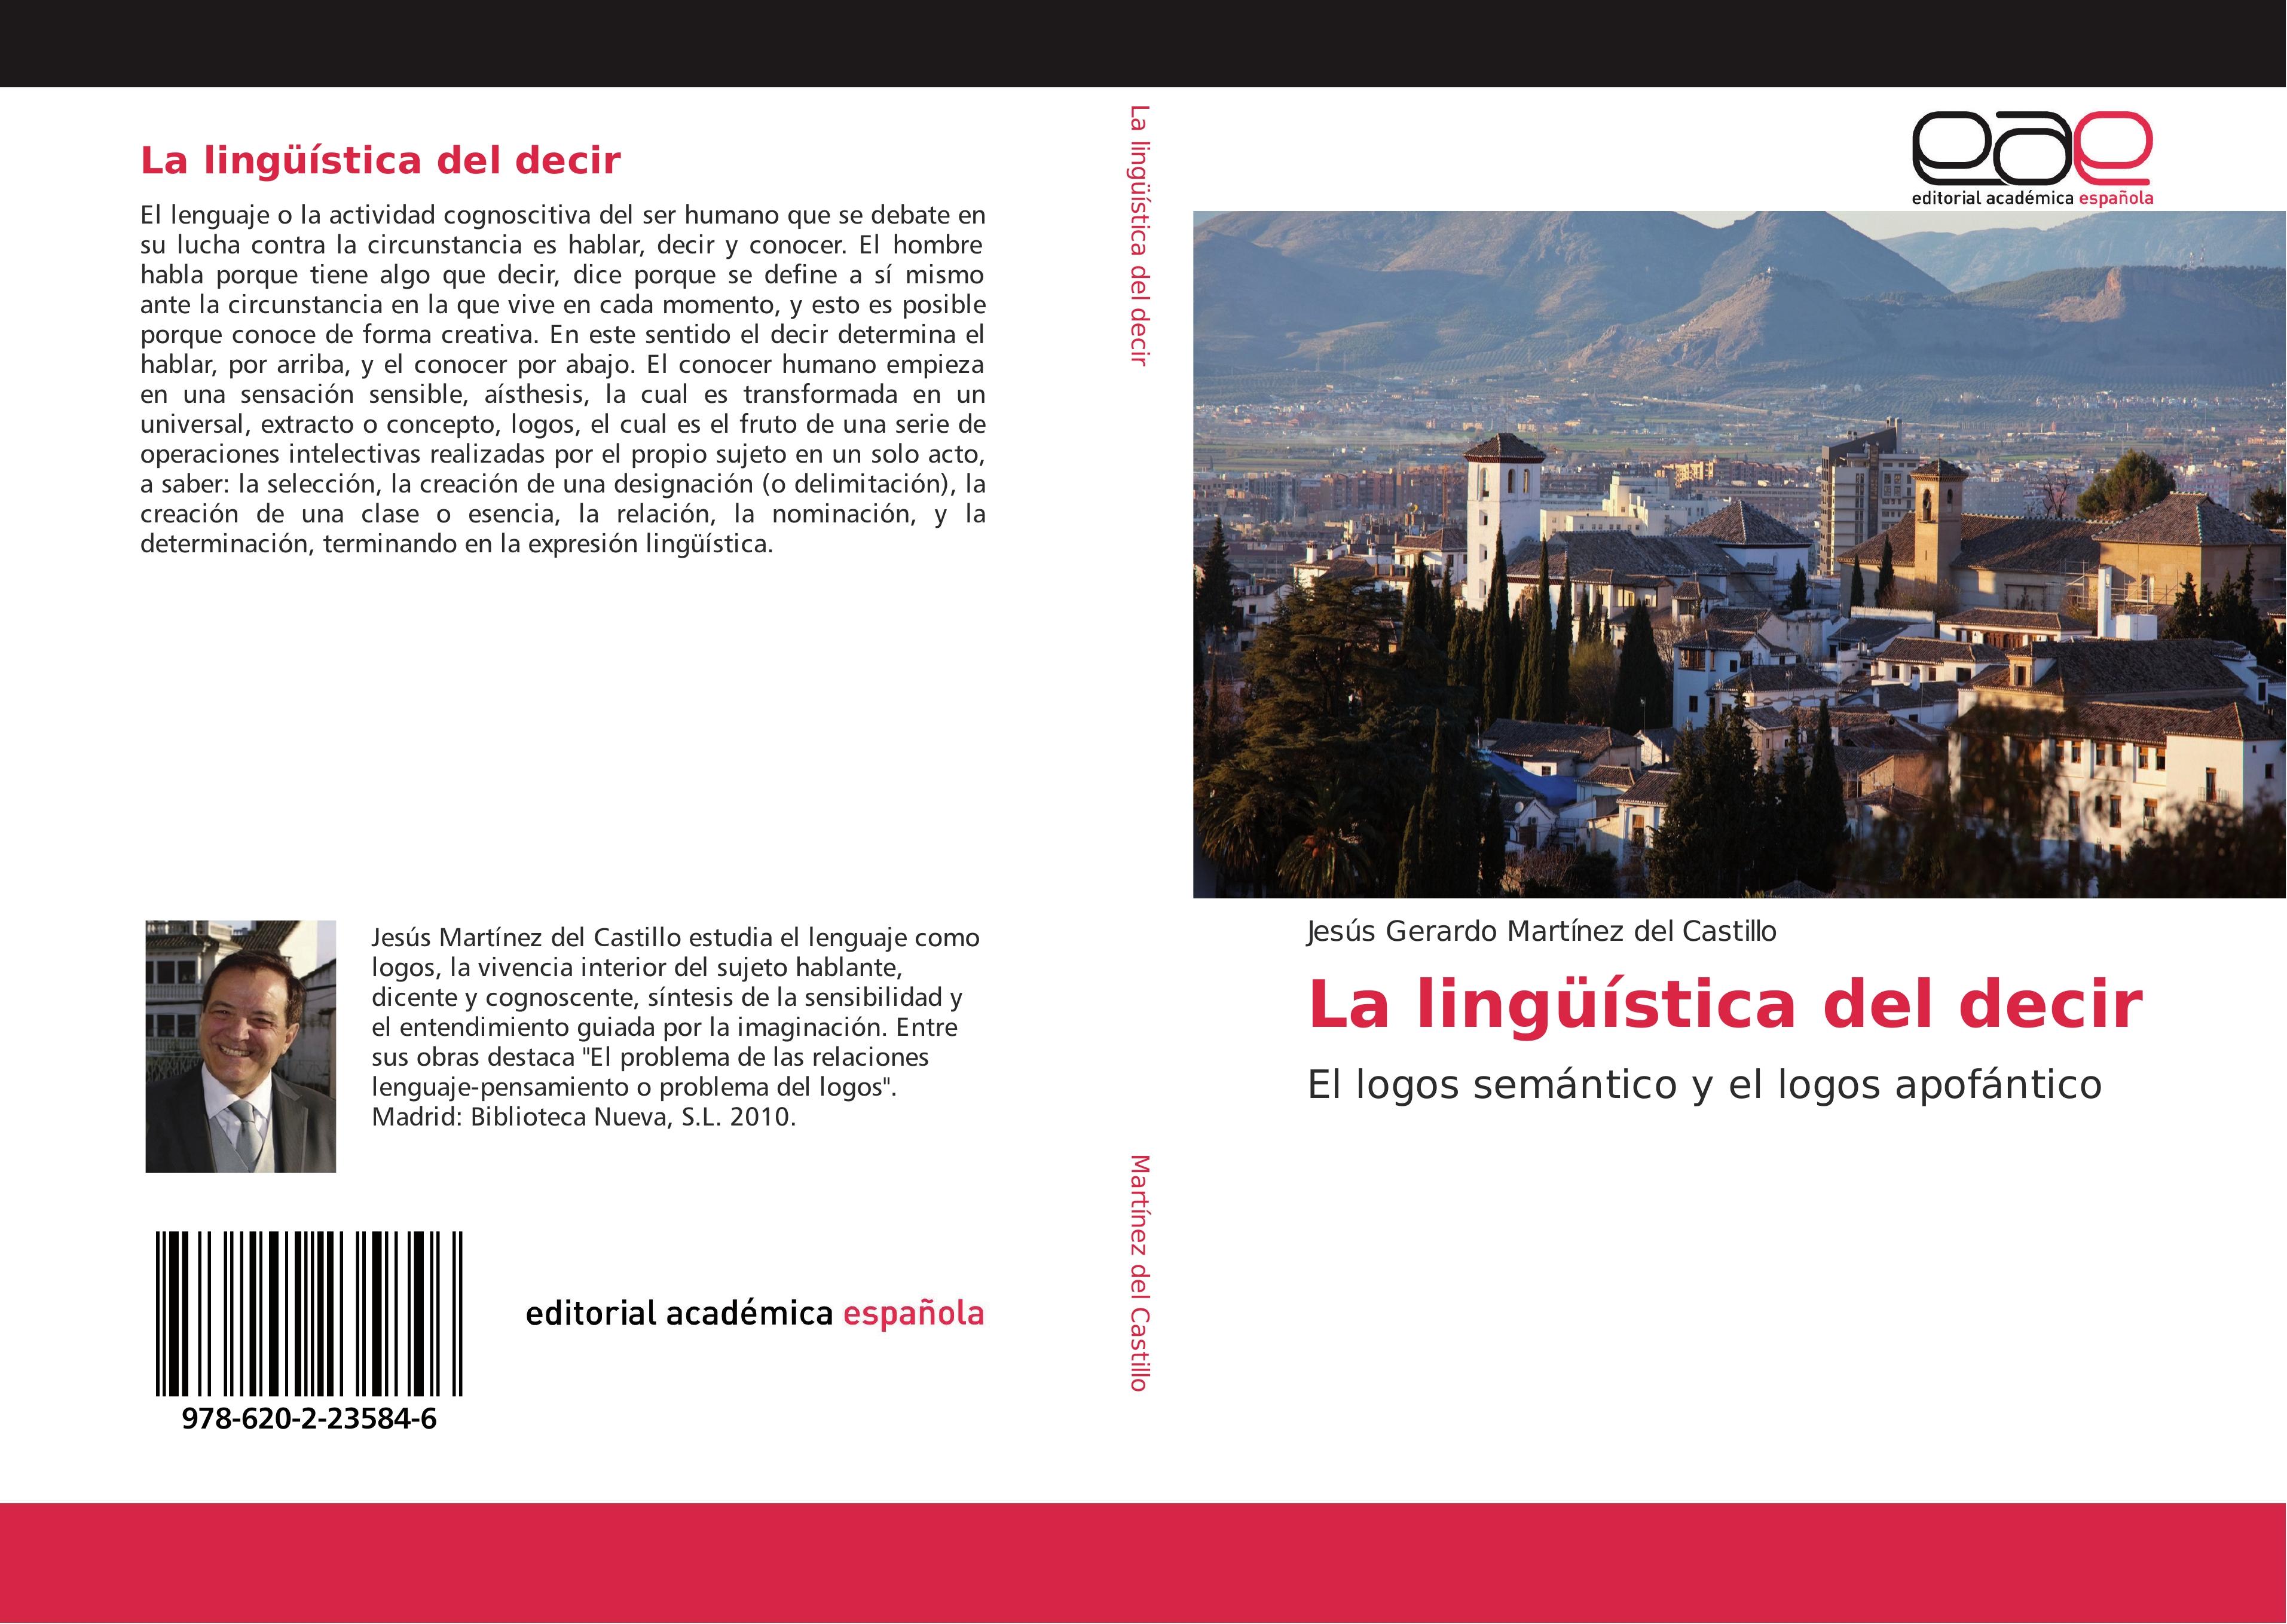 La lingueística del decir - Jesús Gerardo Martínez del Castillo